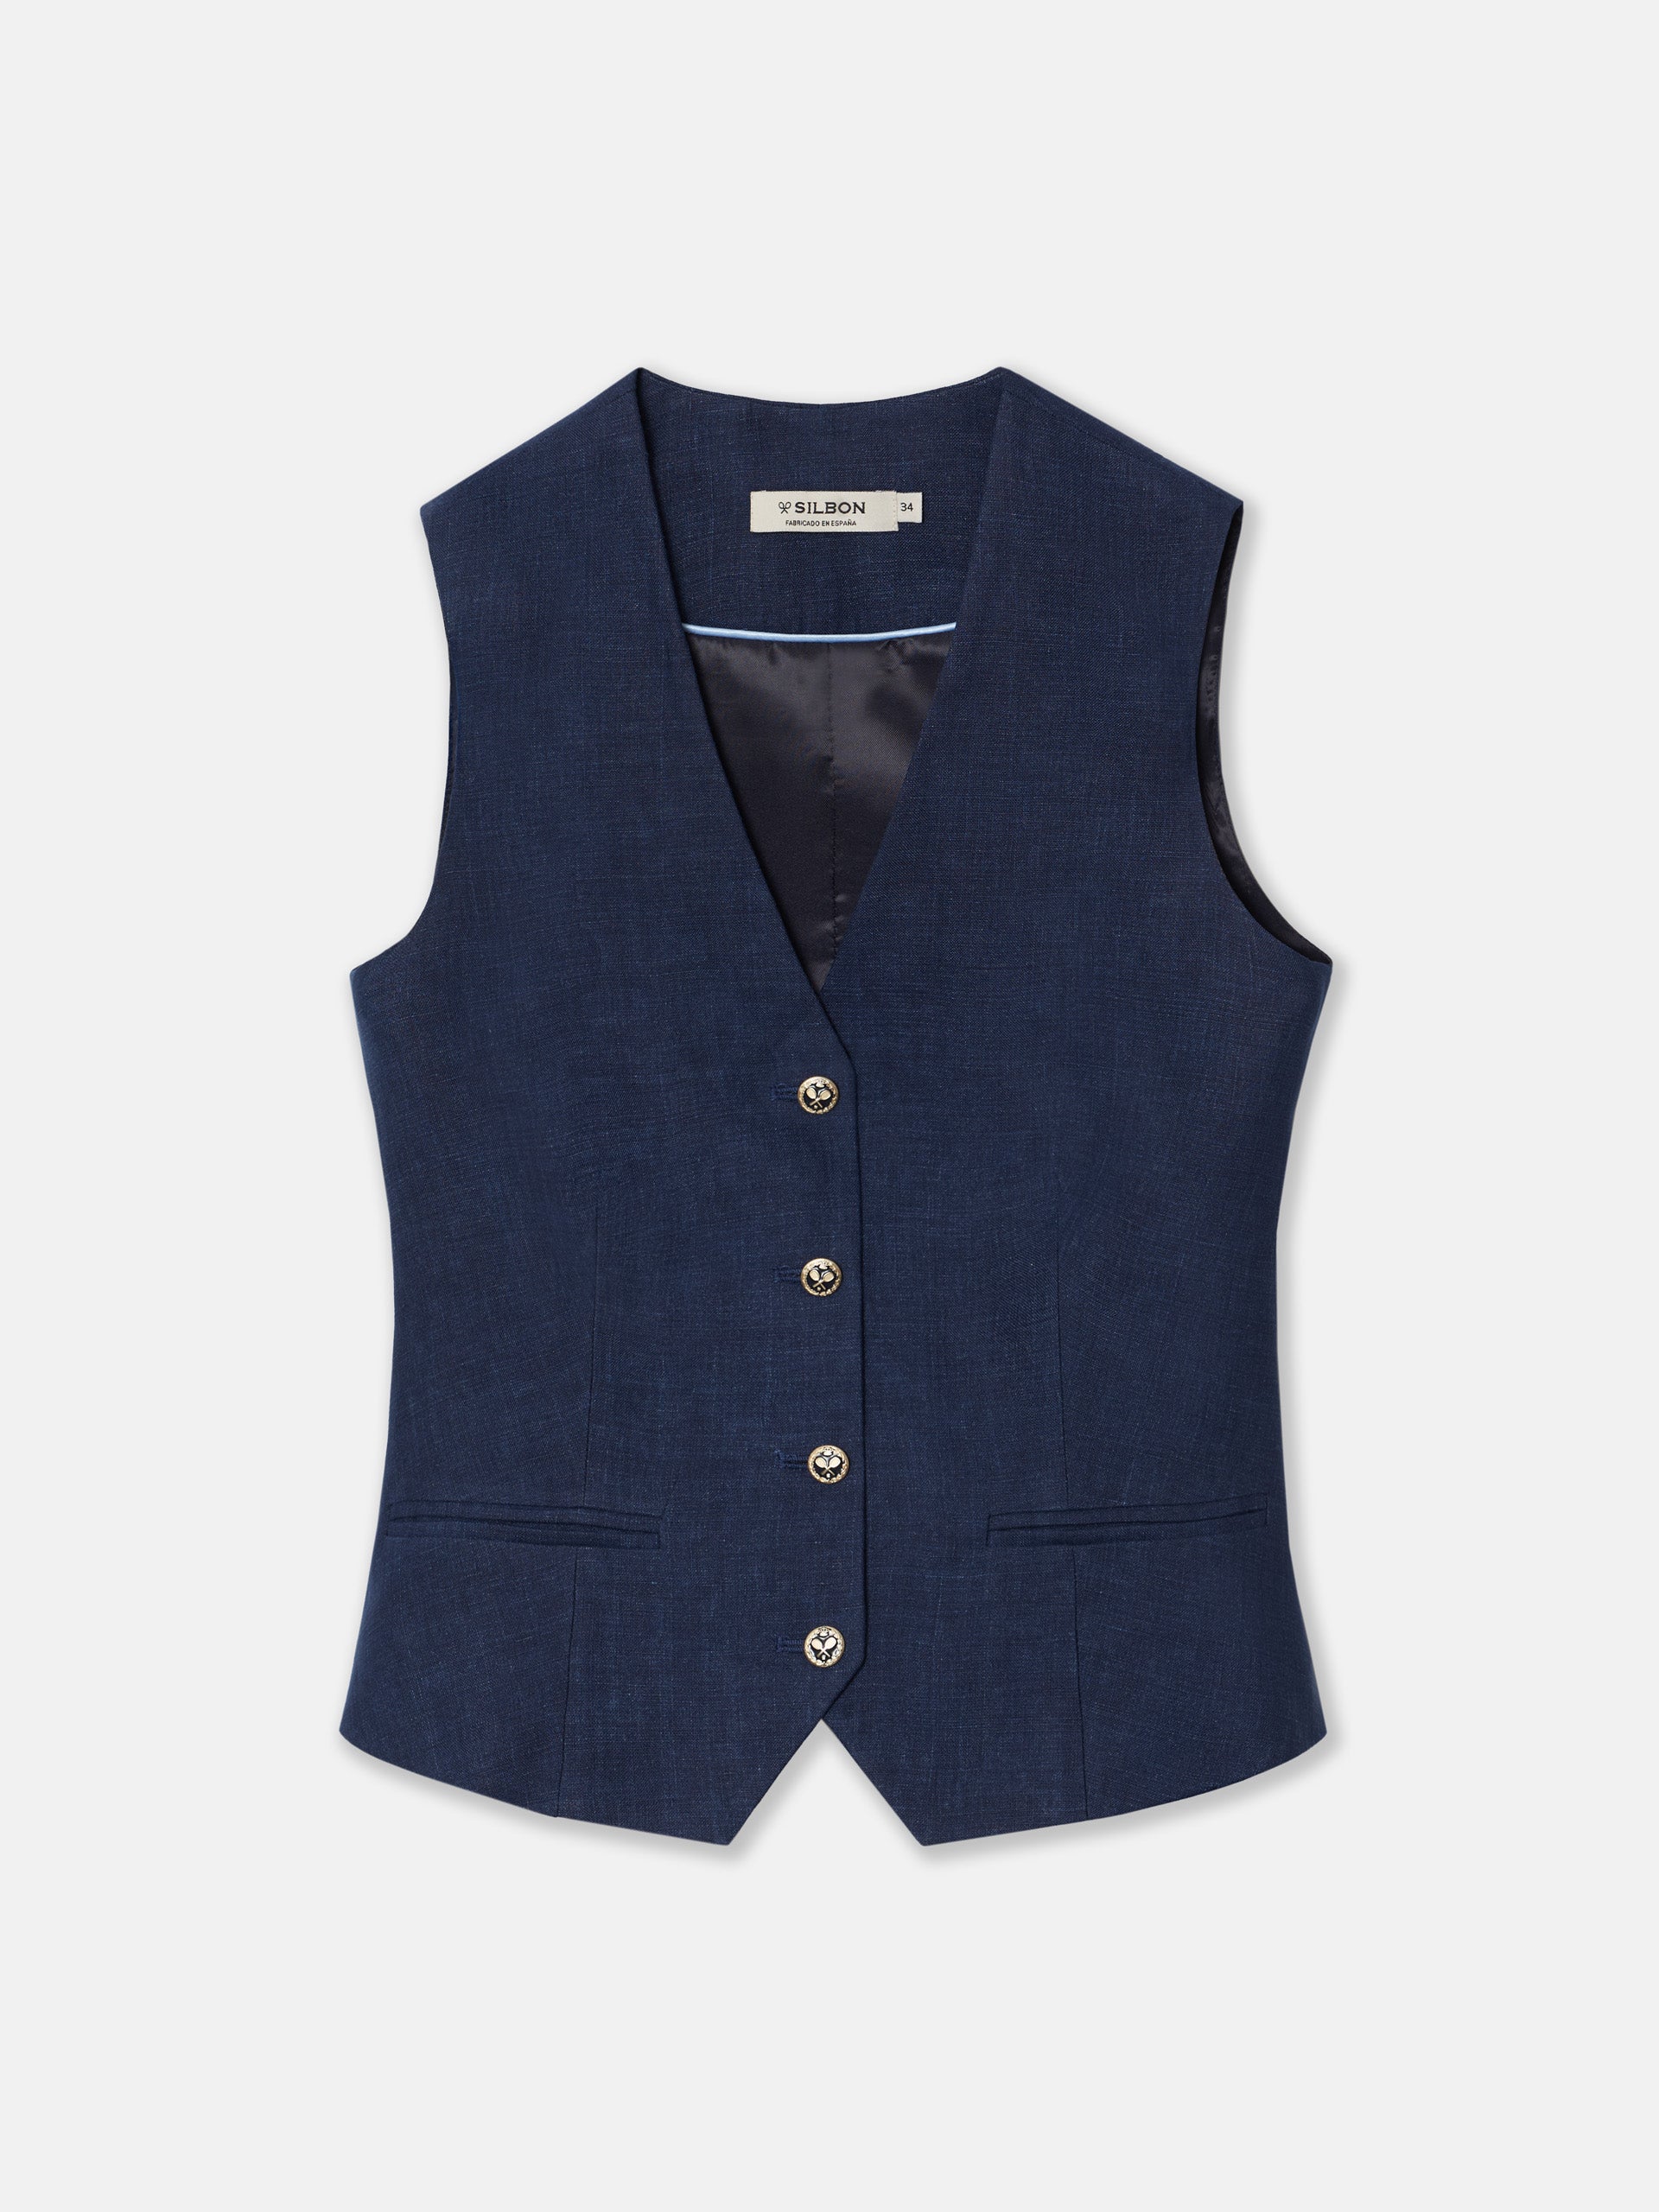 Women's blue linen vest